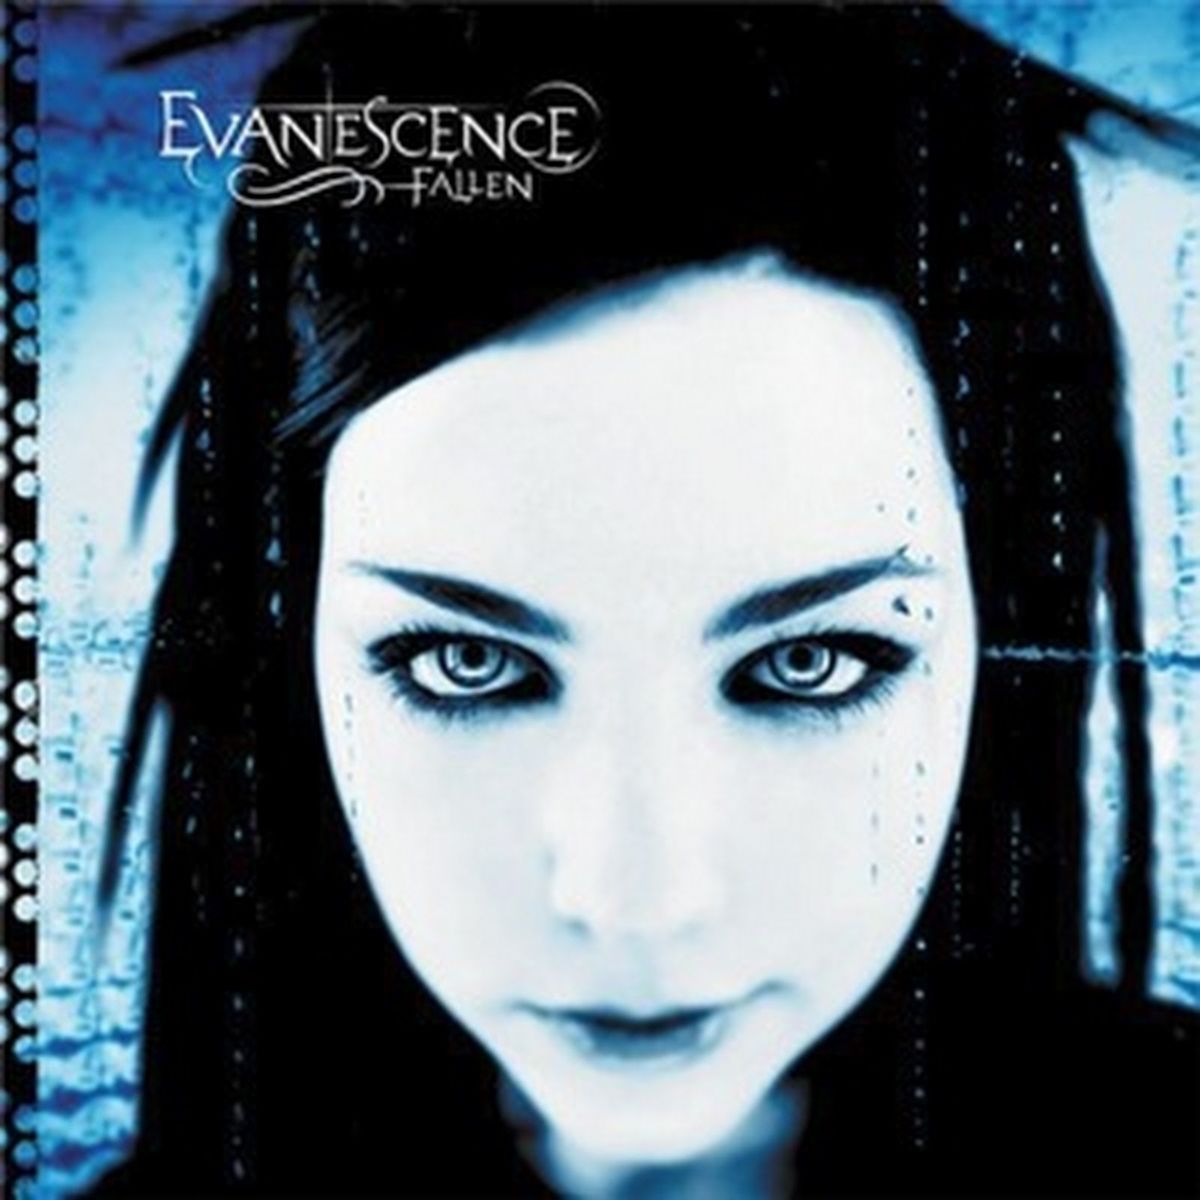 Couverture de Fallen by Evanescence avec une fille gothique regardant la caméra